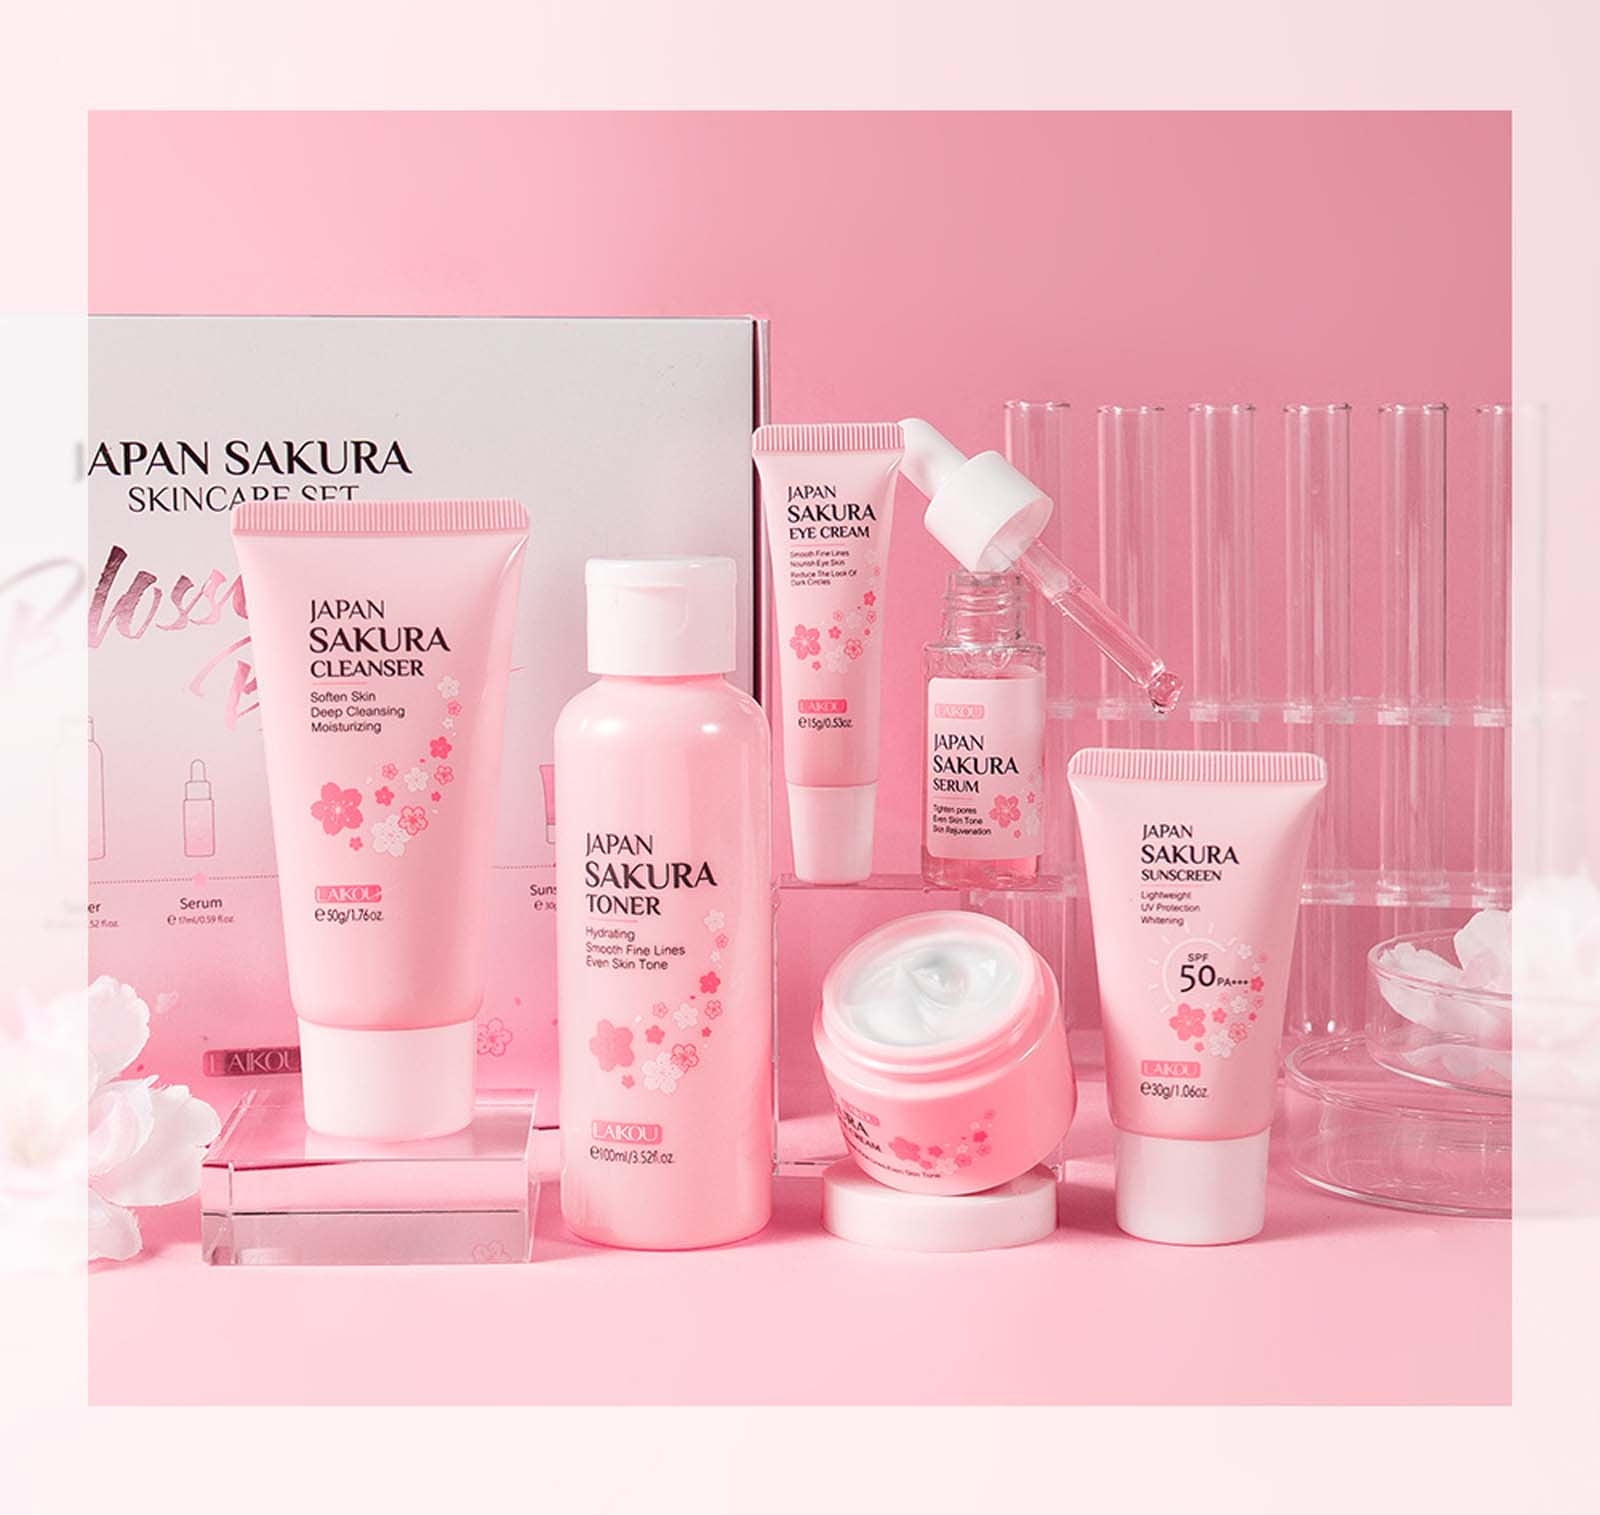 Gzwccvsn Sakura Skin Care Set, Japan Sakura Face Care Set of 6, Containing  Deep Cleansing Facial Cleanser+Hydrating Facial Cream +Skin Refining Facial  